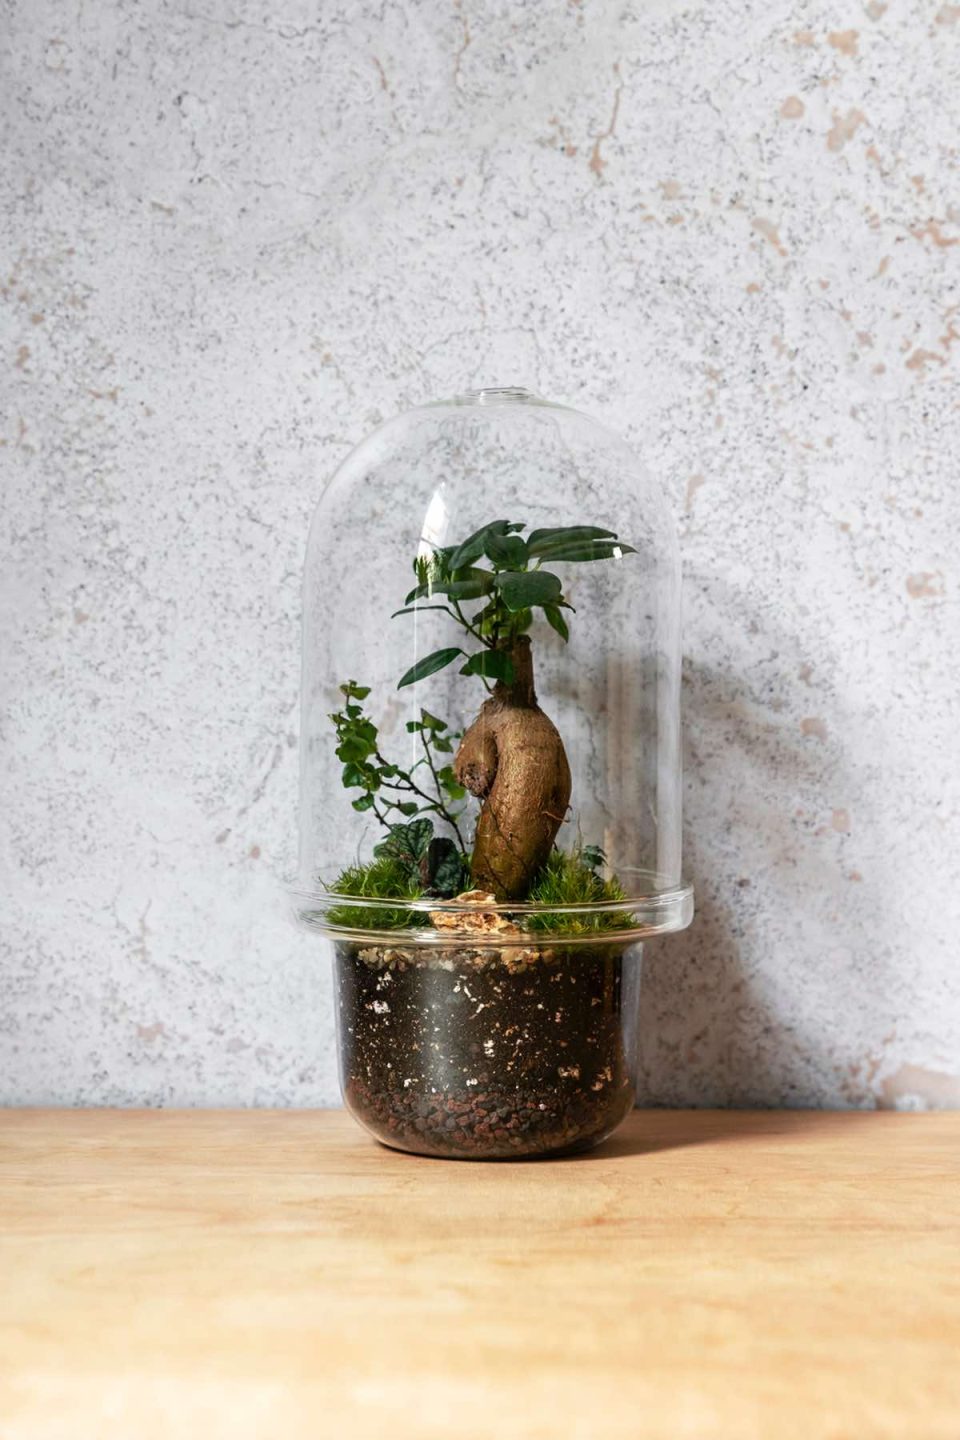 Slika prikazuje biljni terarija u staklenci sa staklenim poklopcem u obliku zvona. Unutra je posađeno jedno bonsai drvce i mahovina.